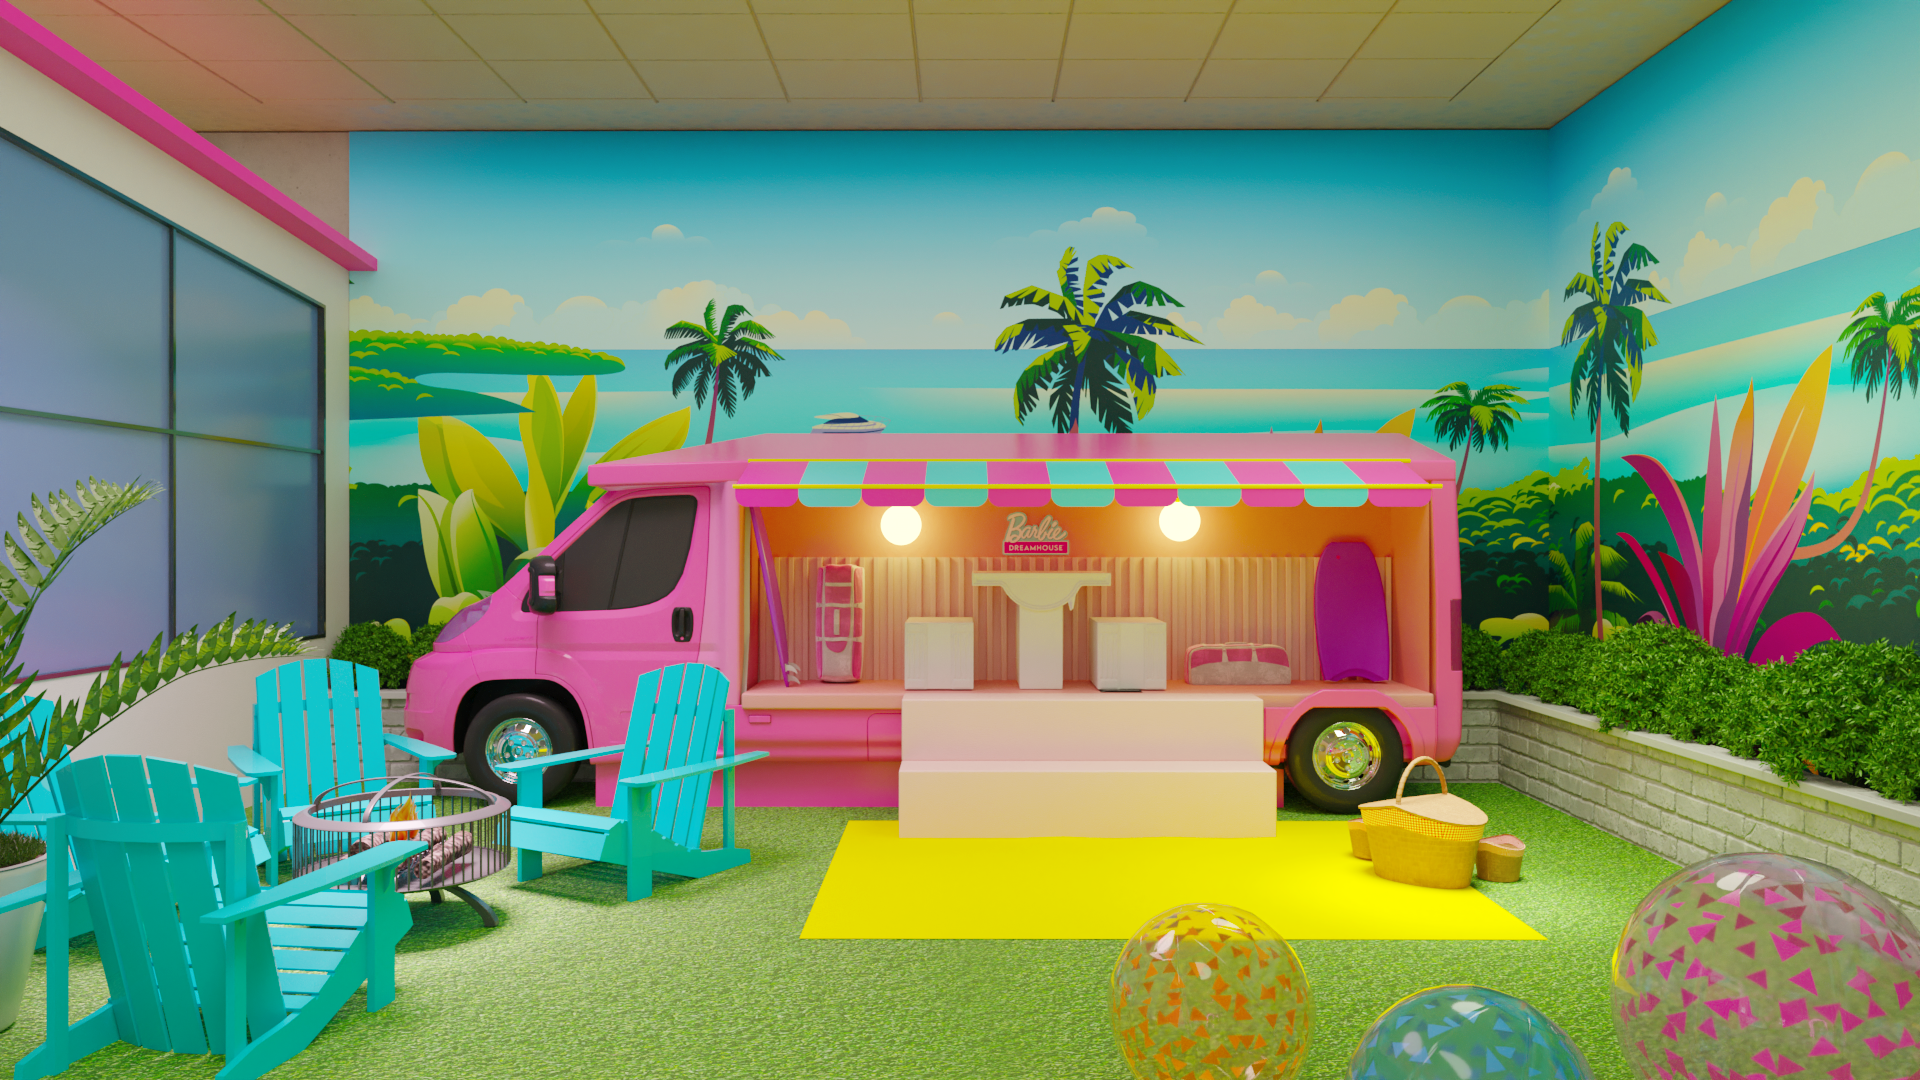 Barbie Dreamhouse Experience': visite a casa da Barbie em SP